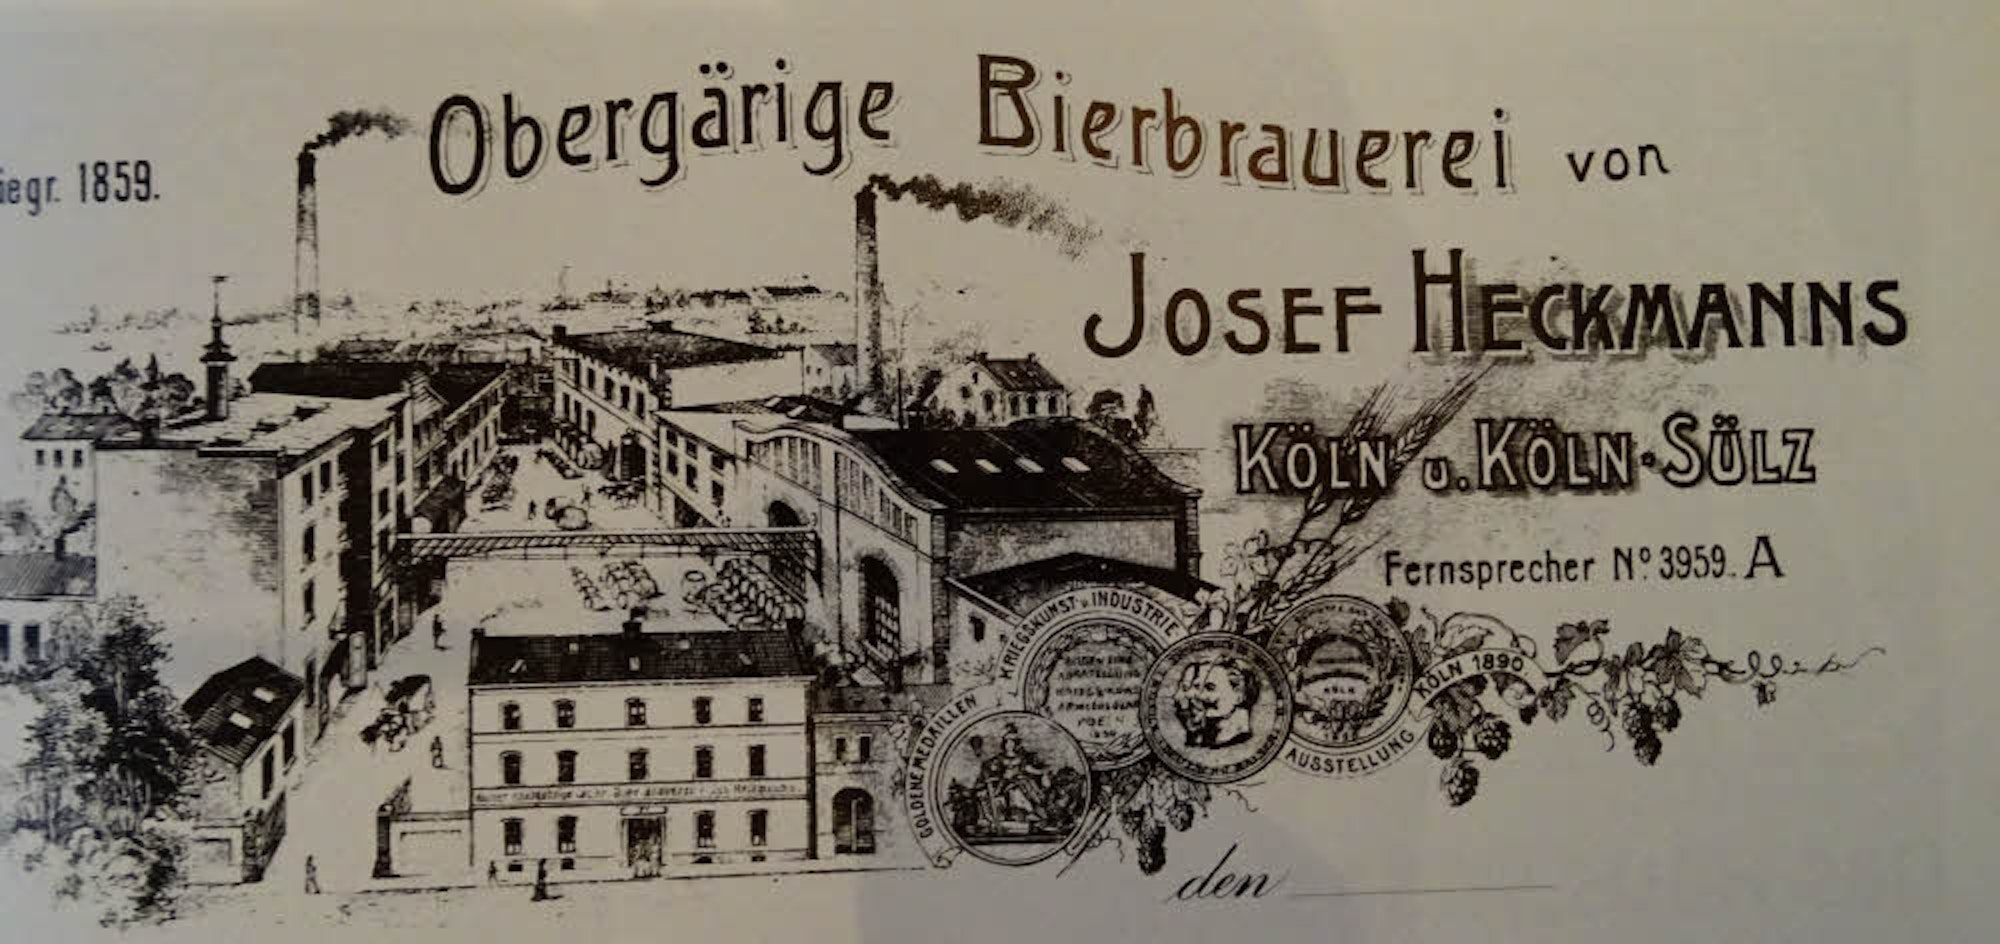 Briefkopf der Brauerei Heckmanns